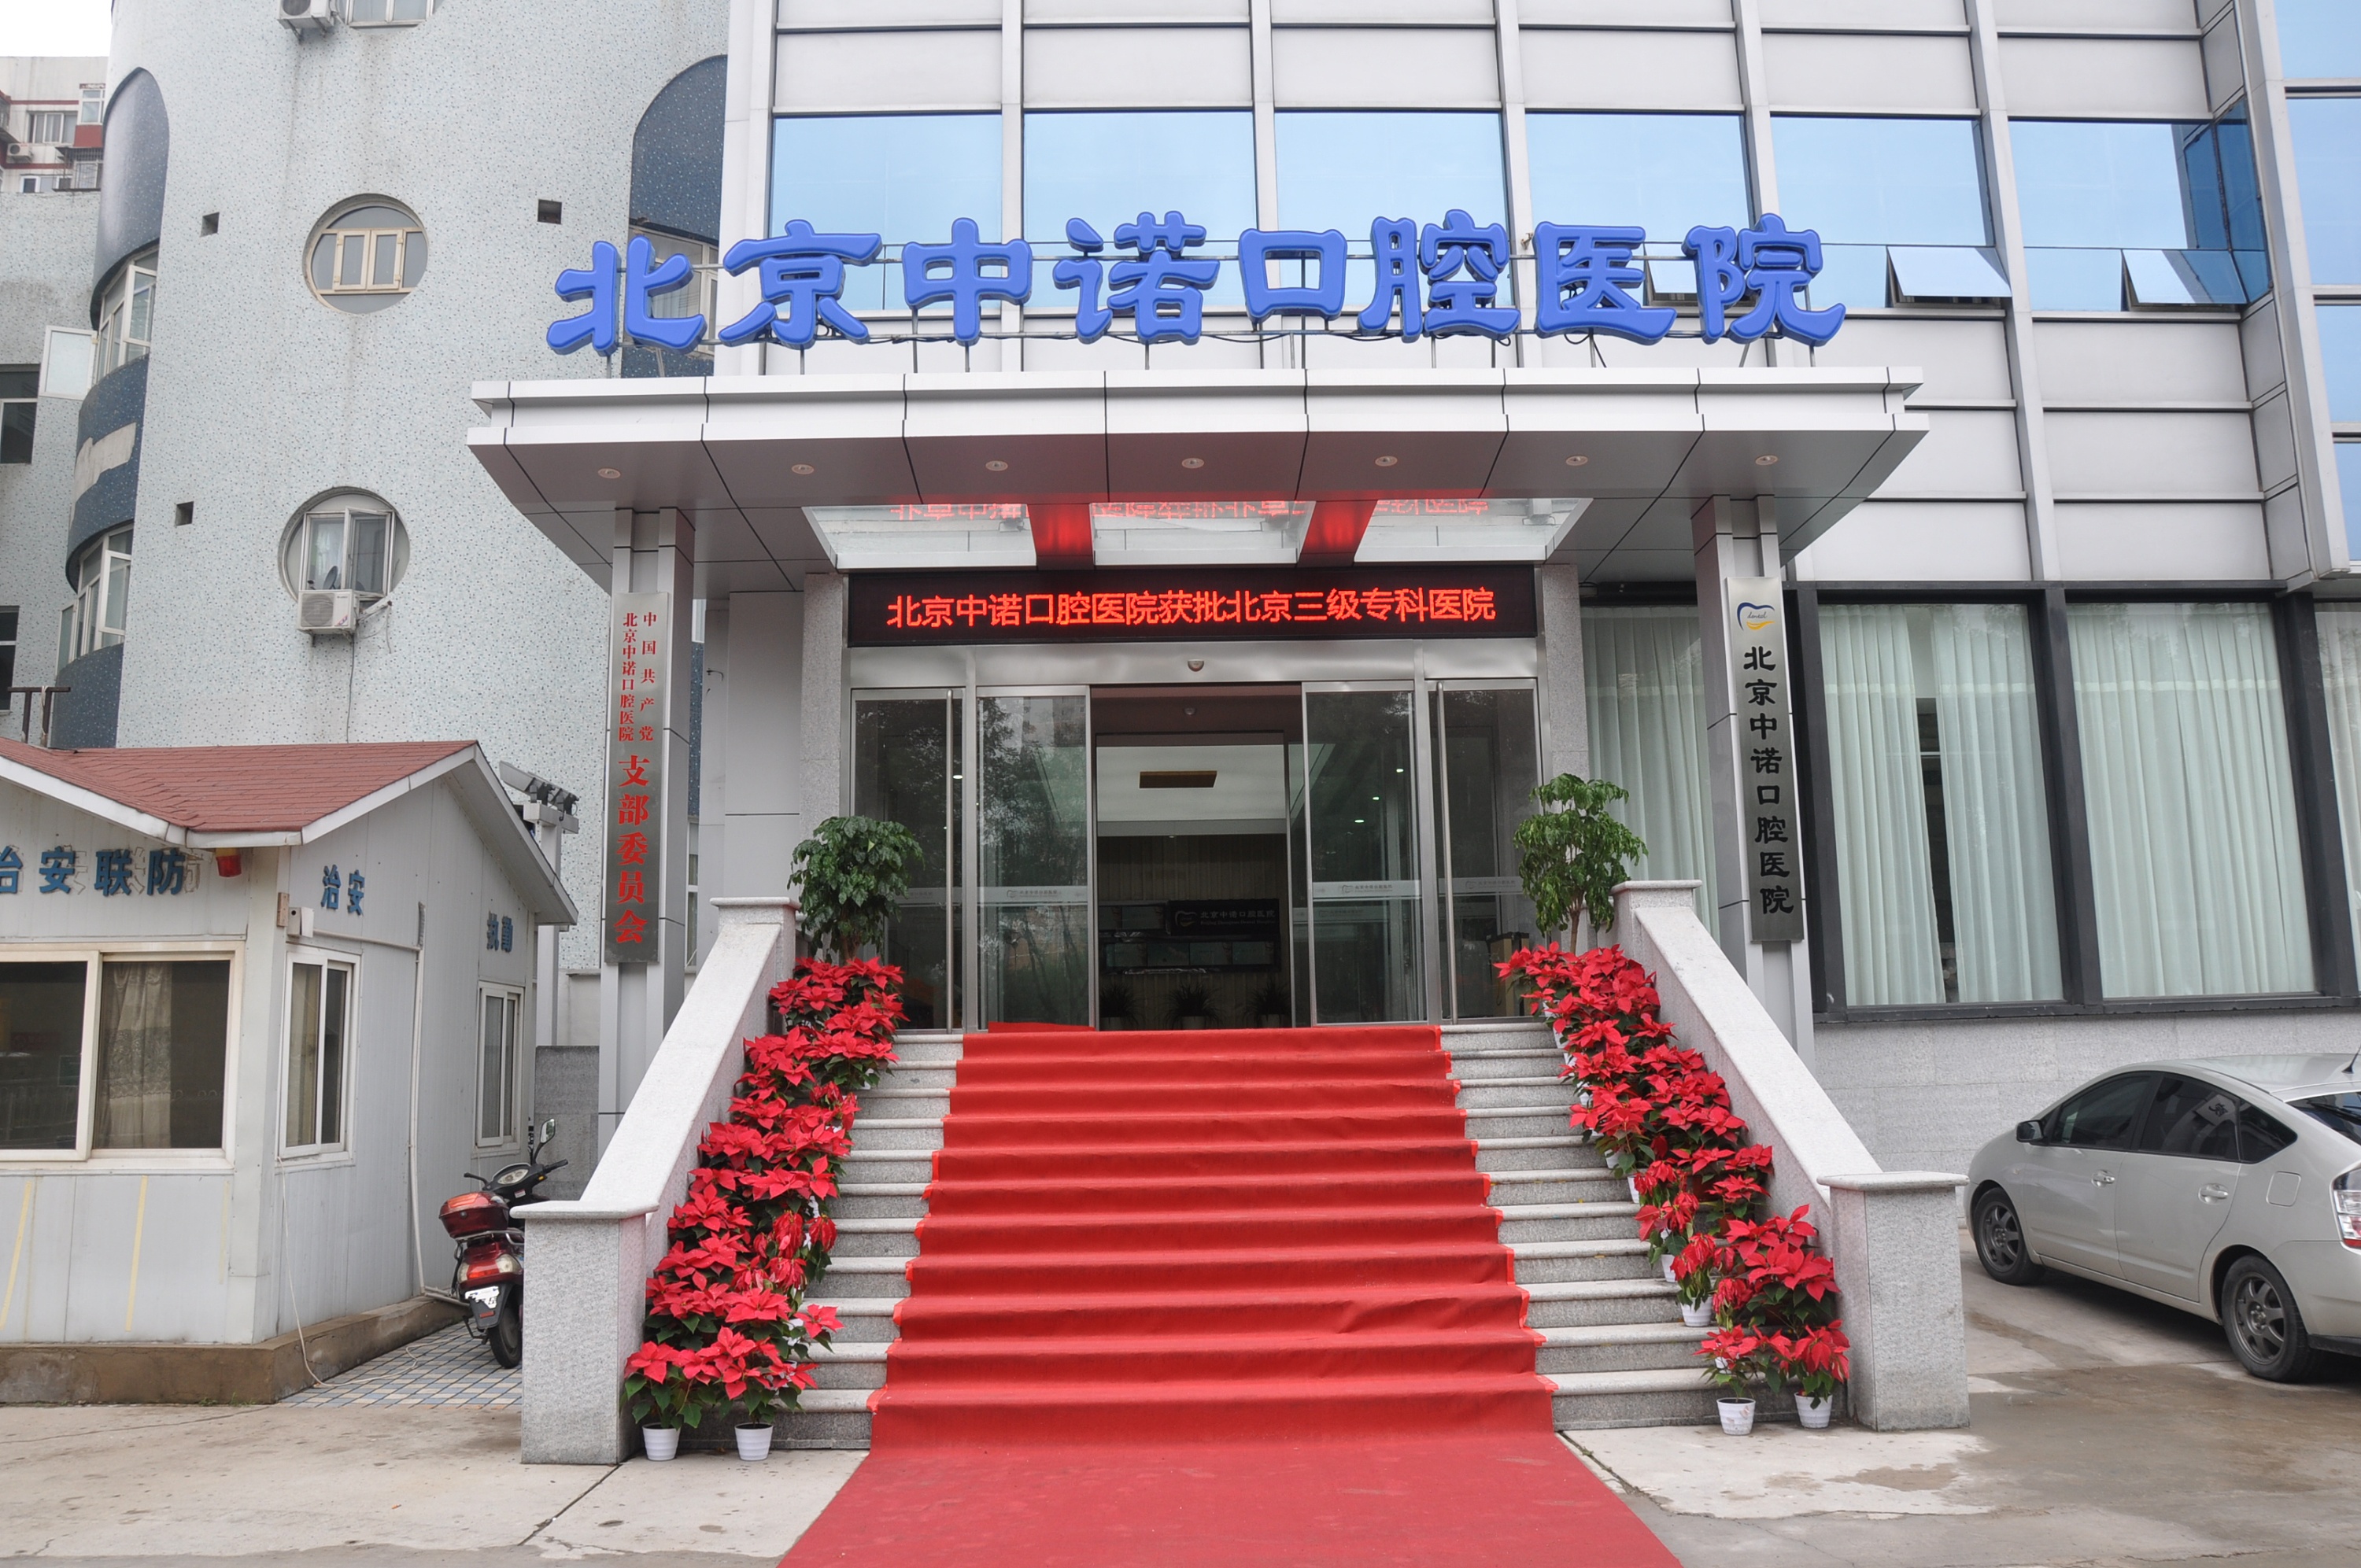 关于北京大学口腔医院热门科室优先跑腿代处理住院的信息